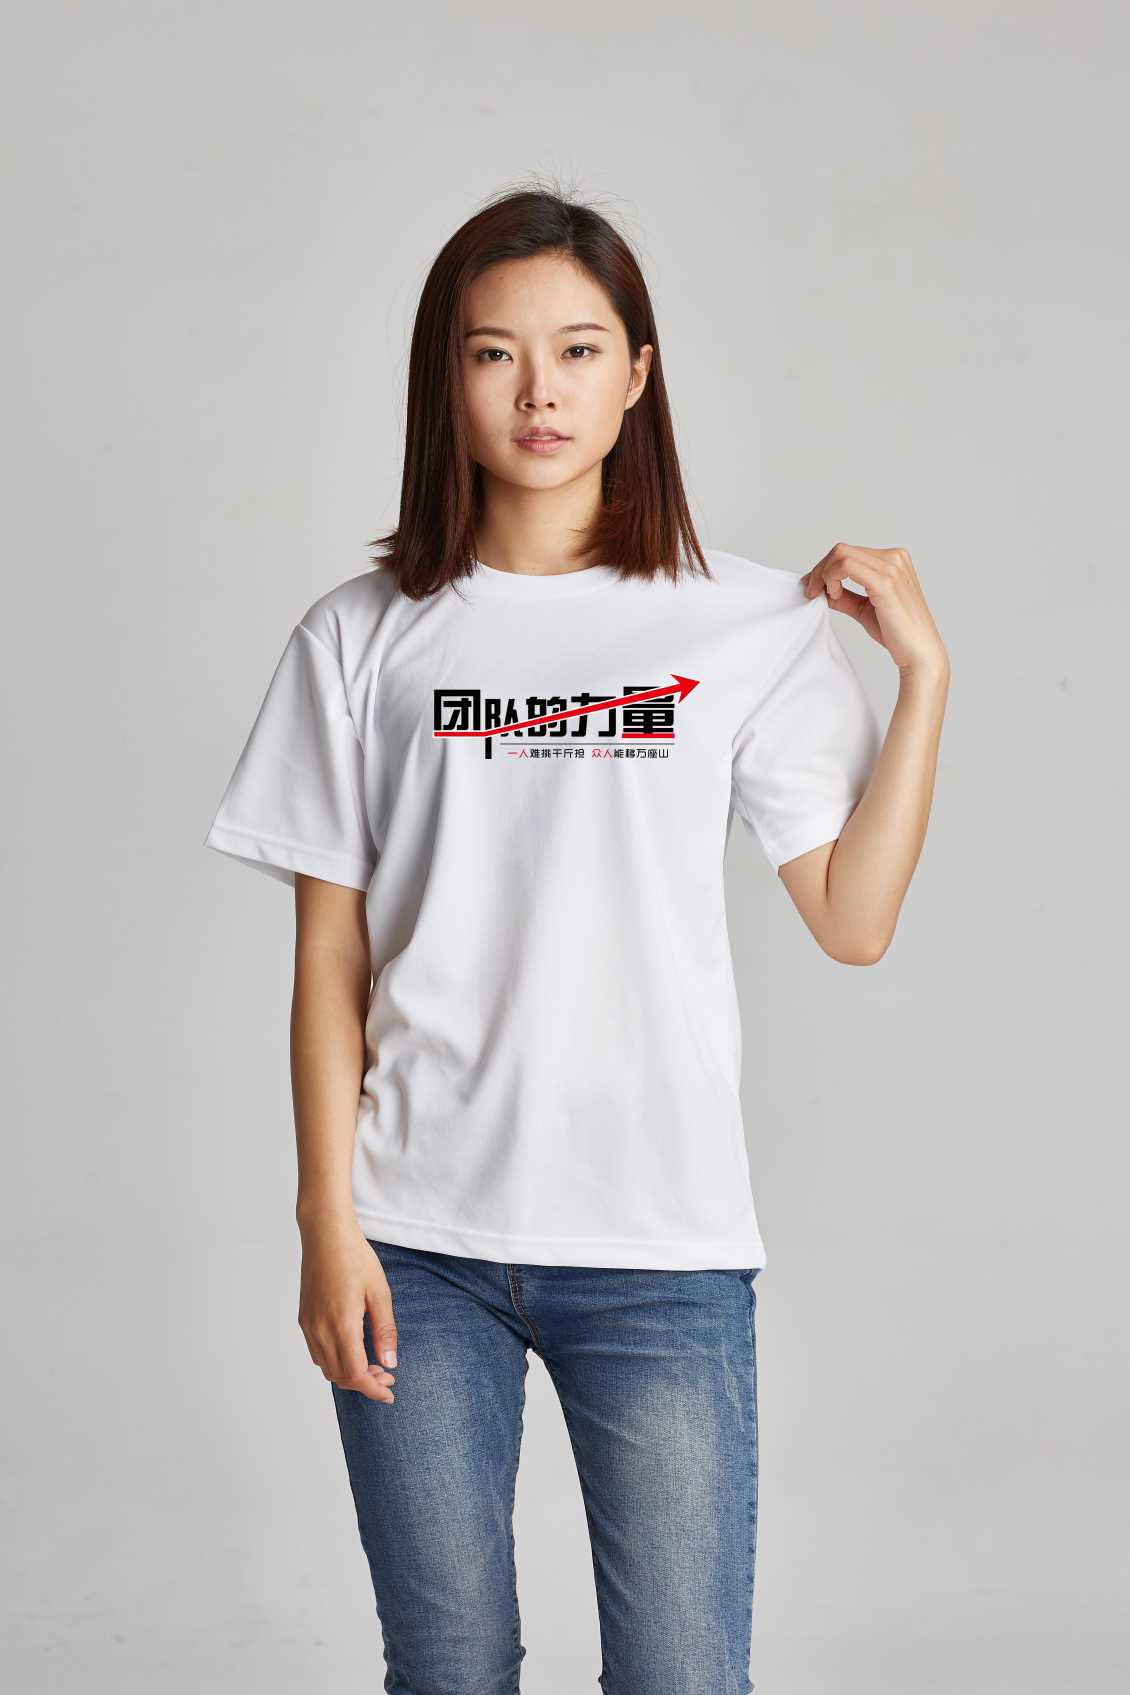 定制泉州文化衫展示您的企业文明